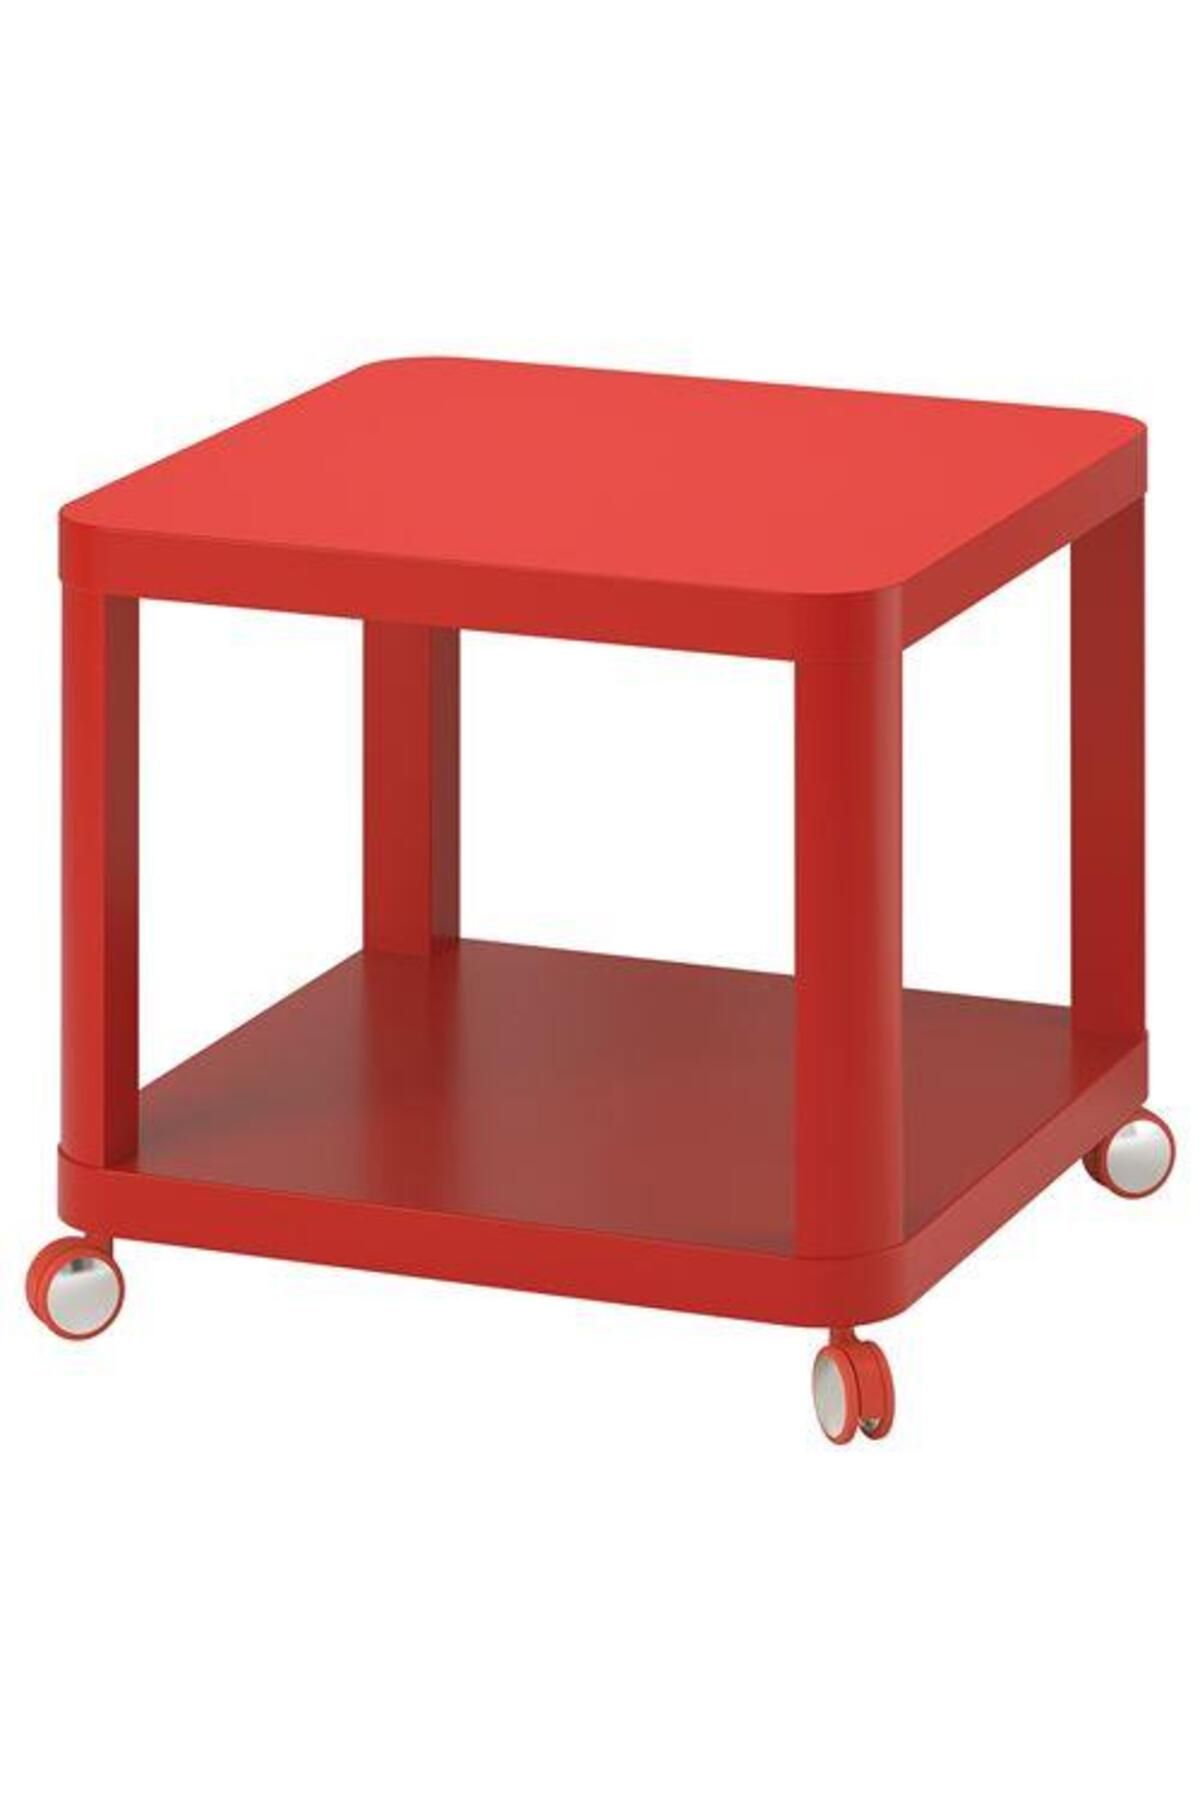 IKEA Tekerlekli Yan Sehpa, Kırmızı Renk Meridyendukkan 50x50 Cm Ev Dekorasyonu Mobilya